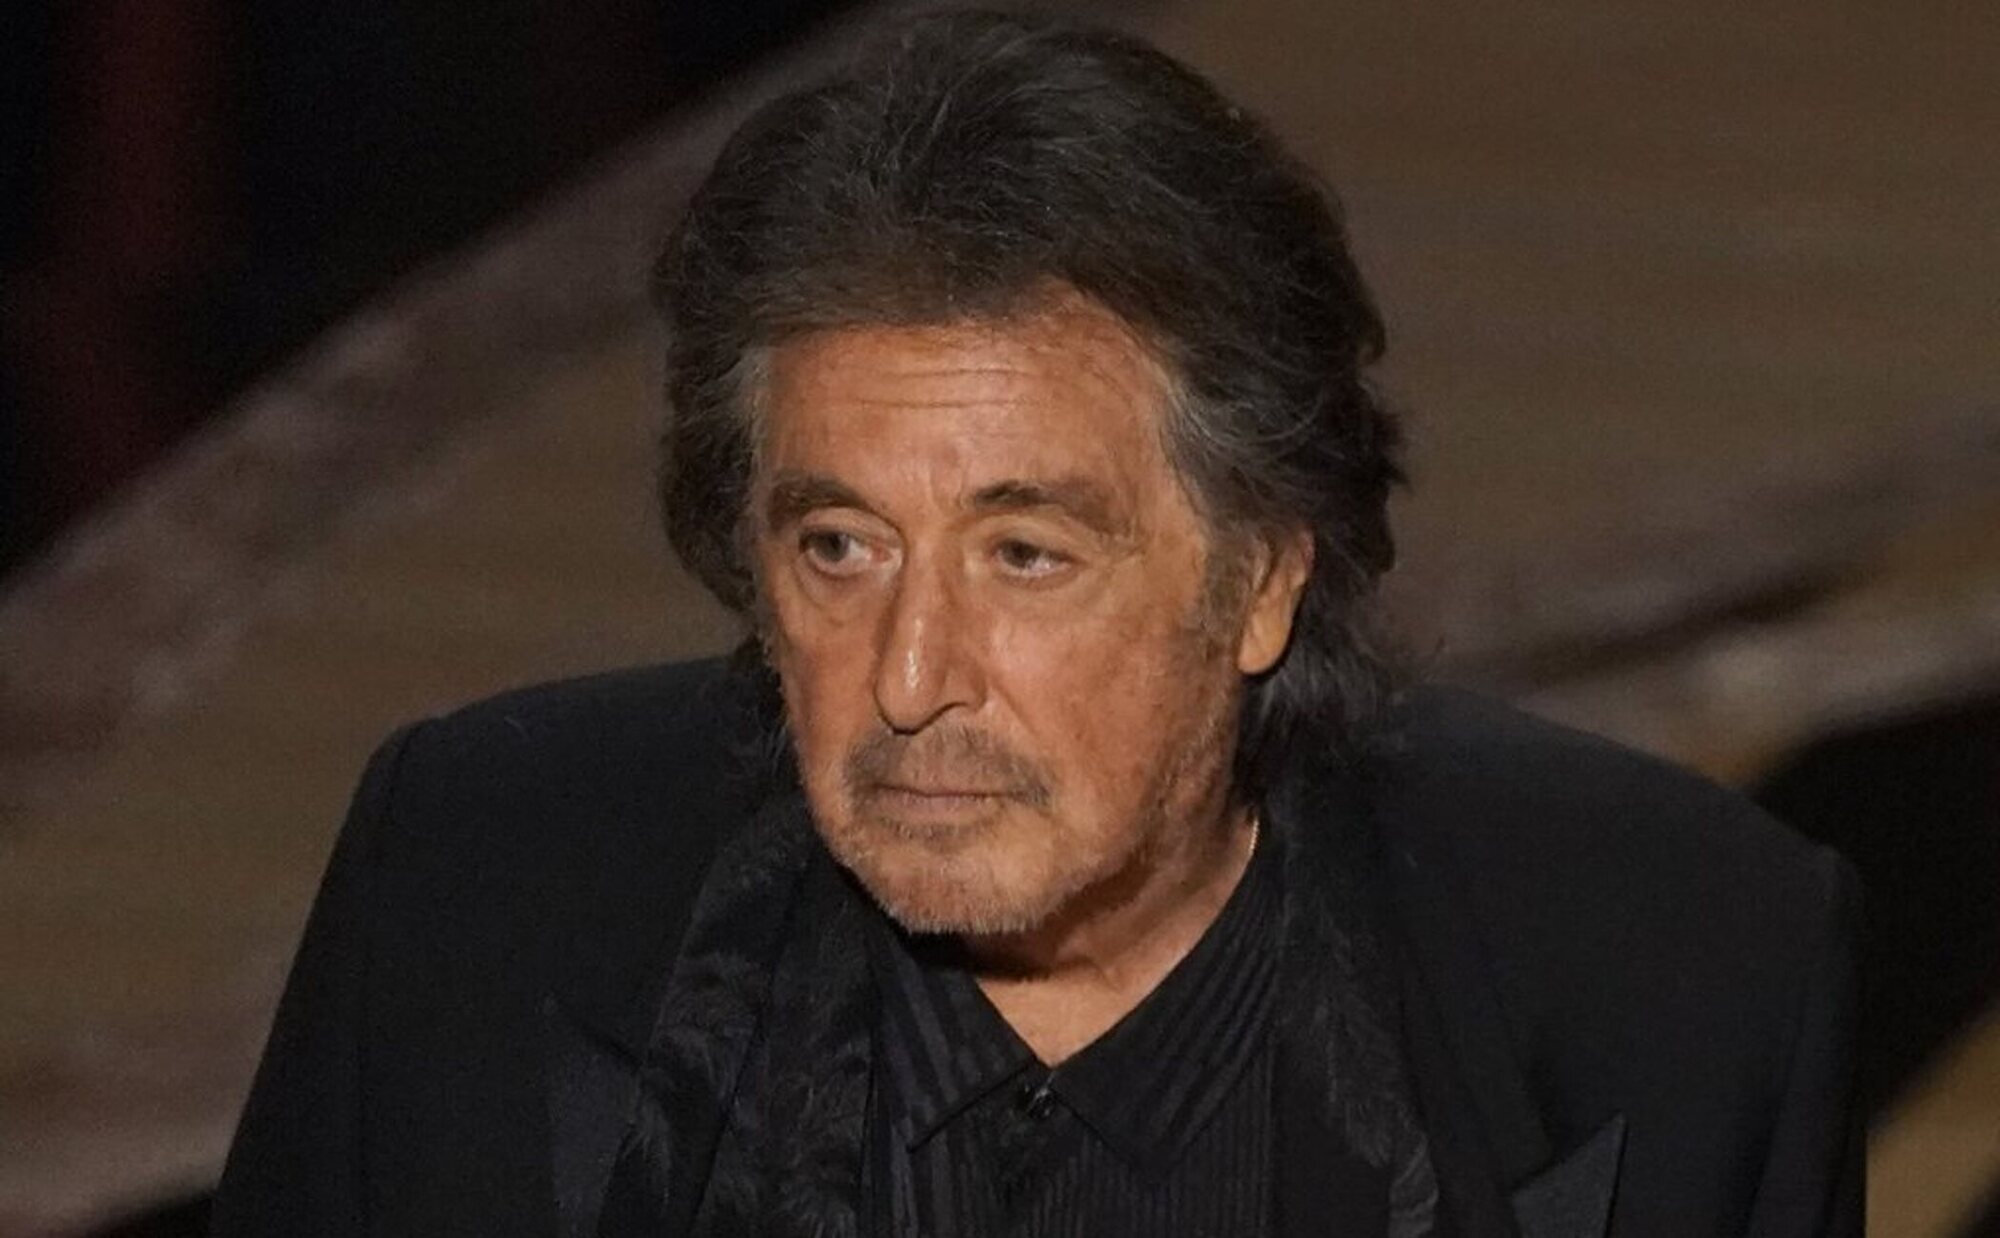 Al Pacino solicitó una prueba de paternidad a su novia cuando supo que estaba embarazada: "Estaba conmocionado"